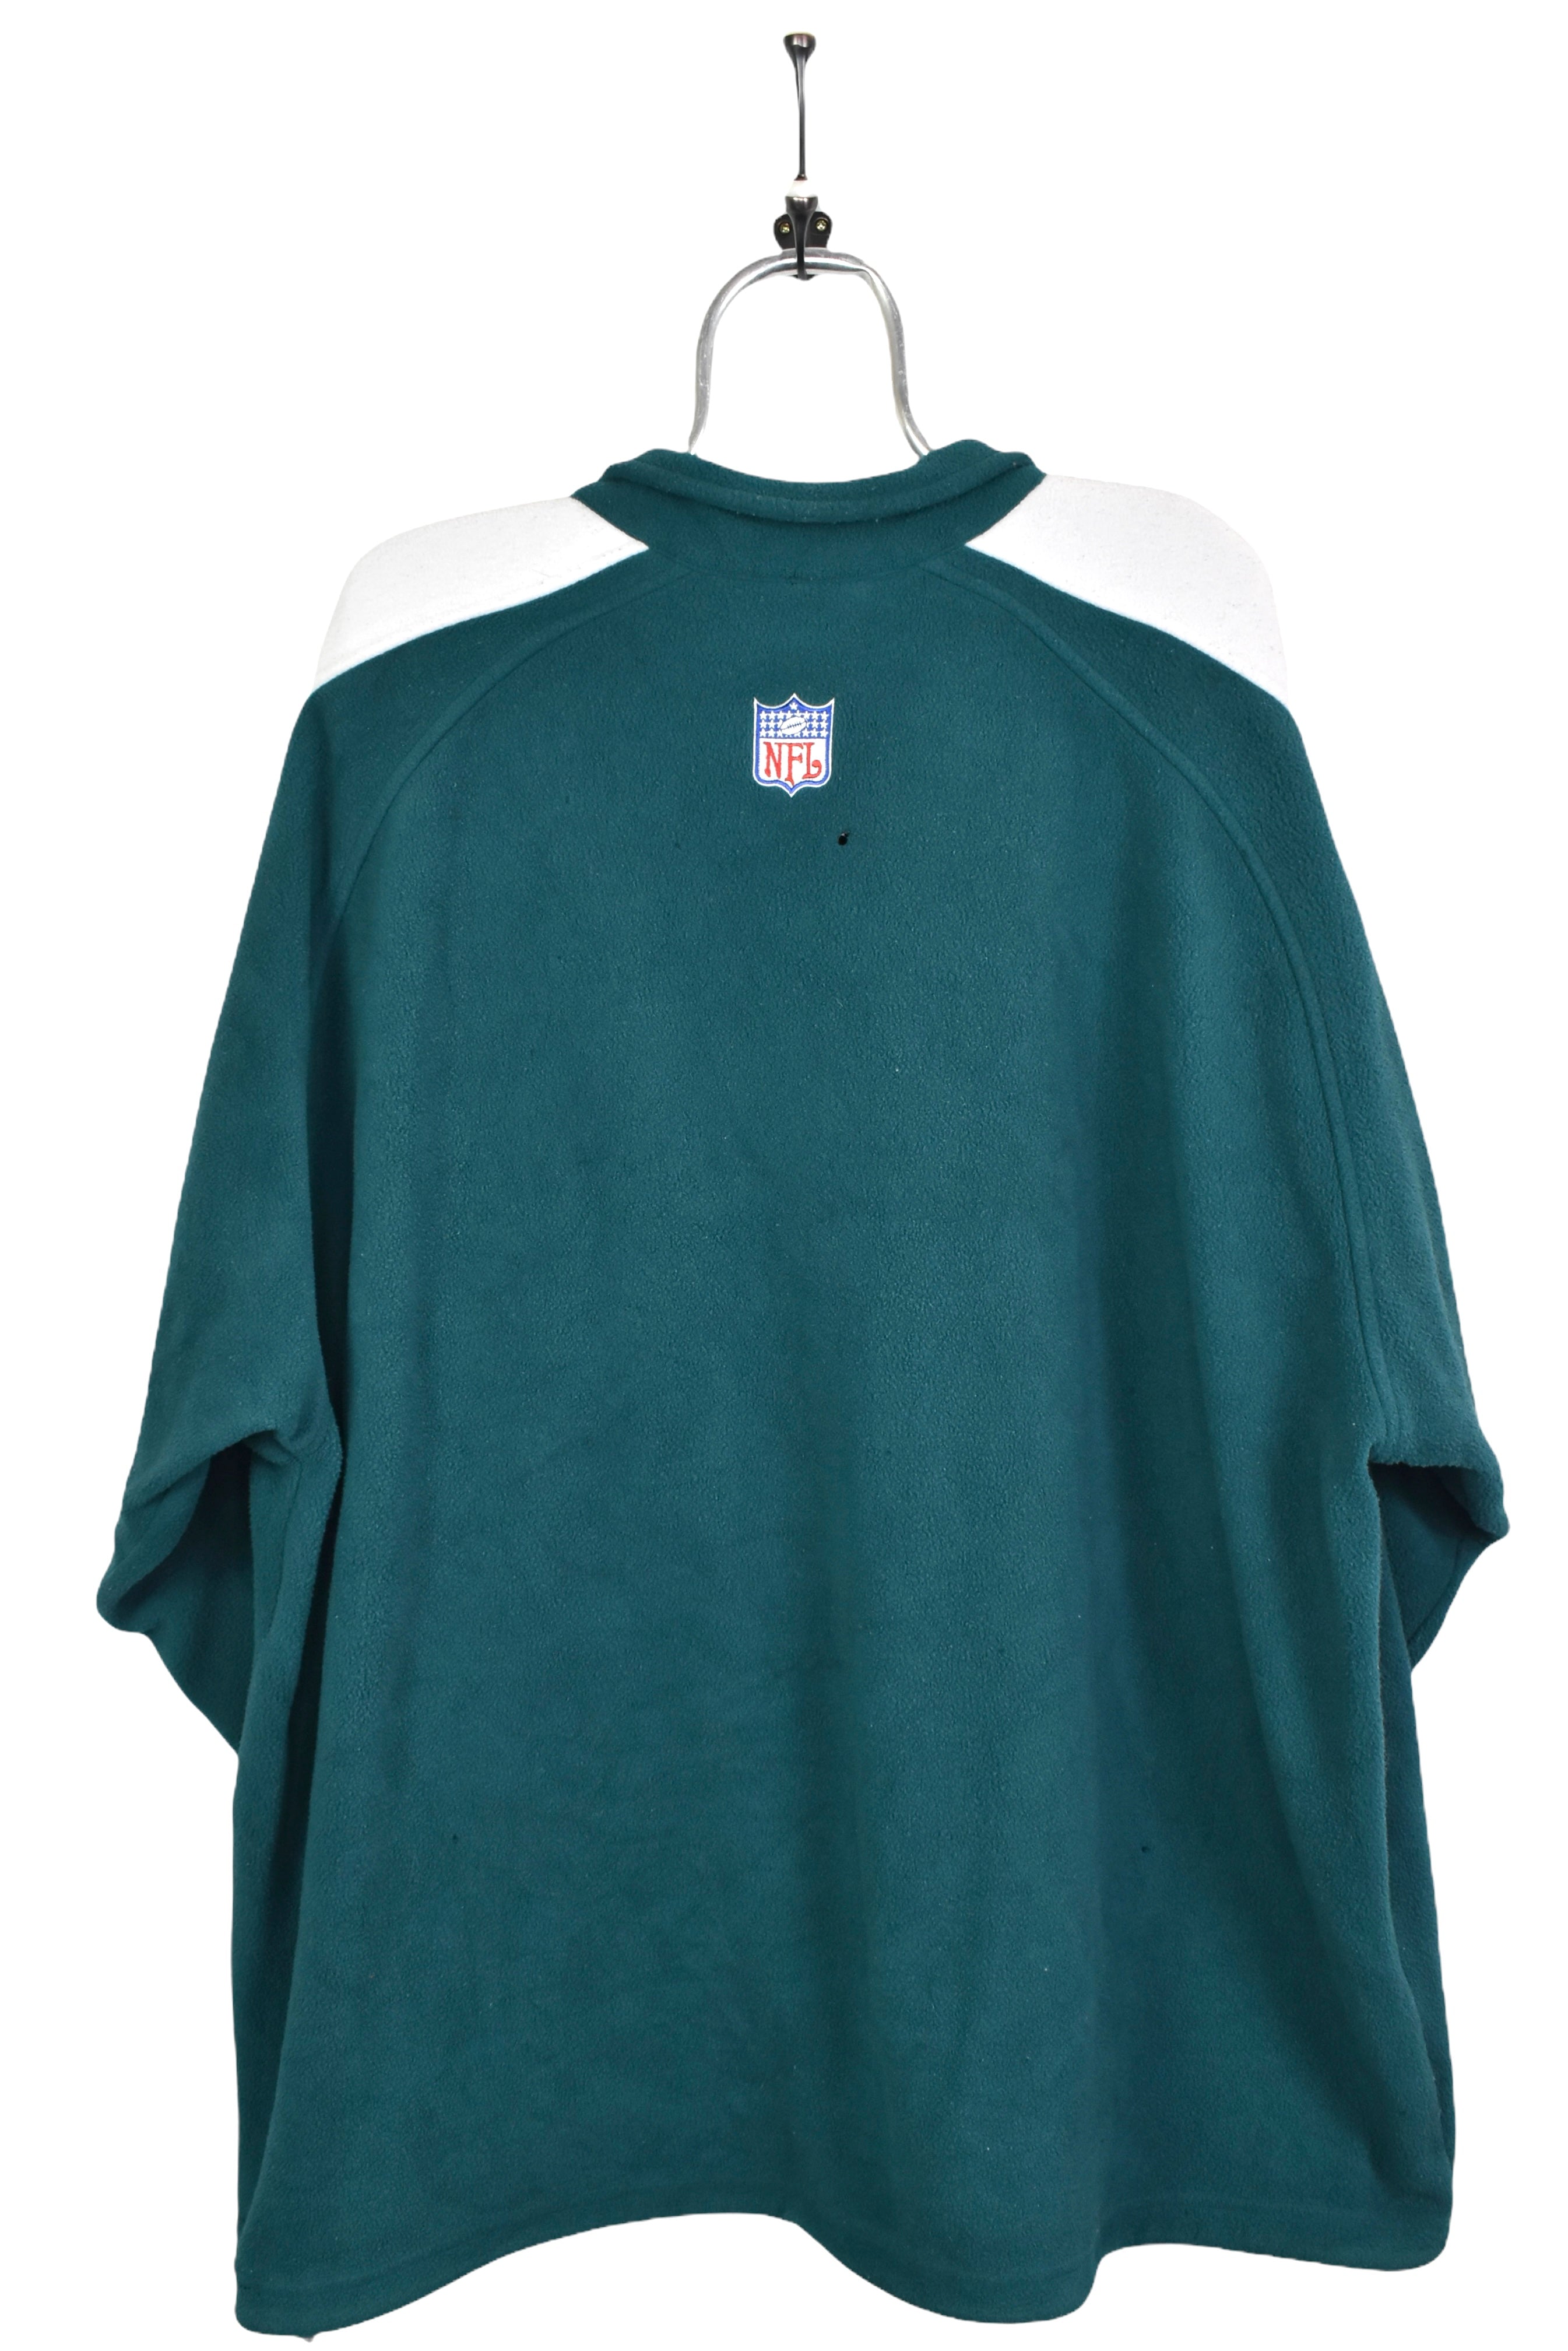 Vintage Philadelphia Eagles fleece, NFL 1/4 zip embroidered sweatshirt - XXXXL, green PRO SPORT